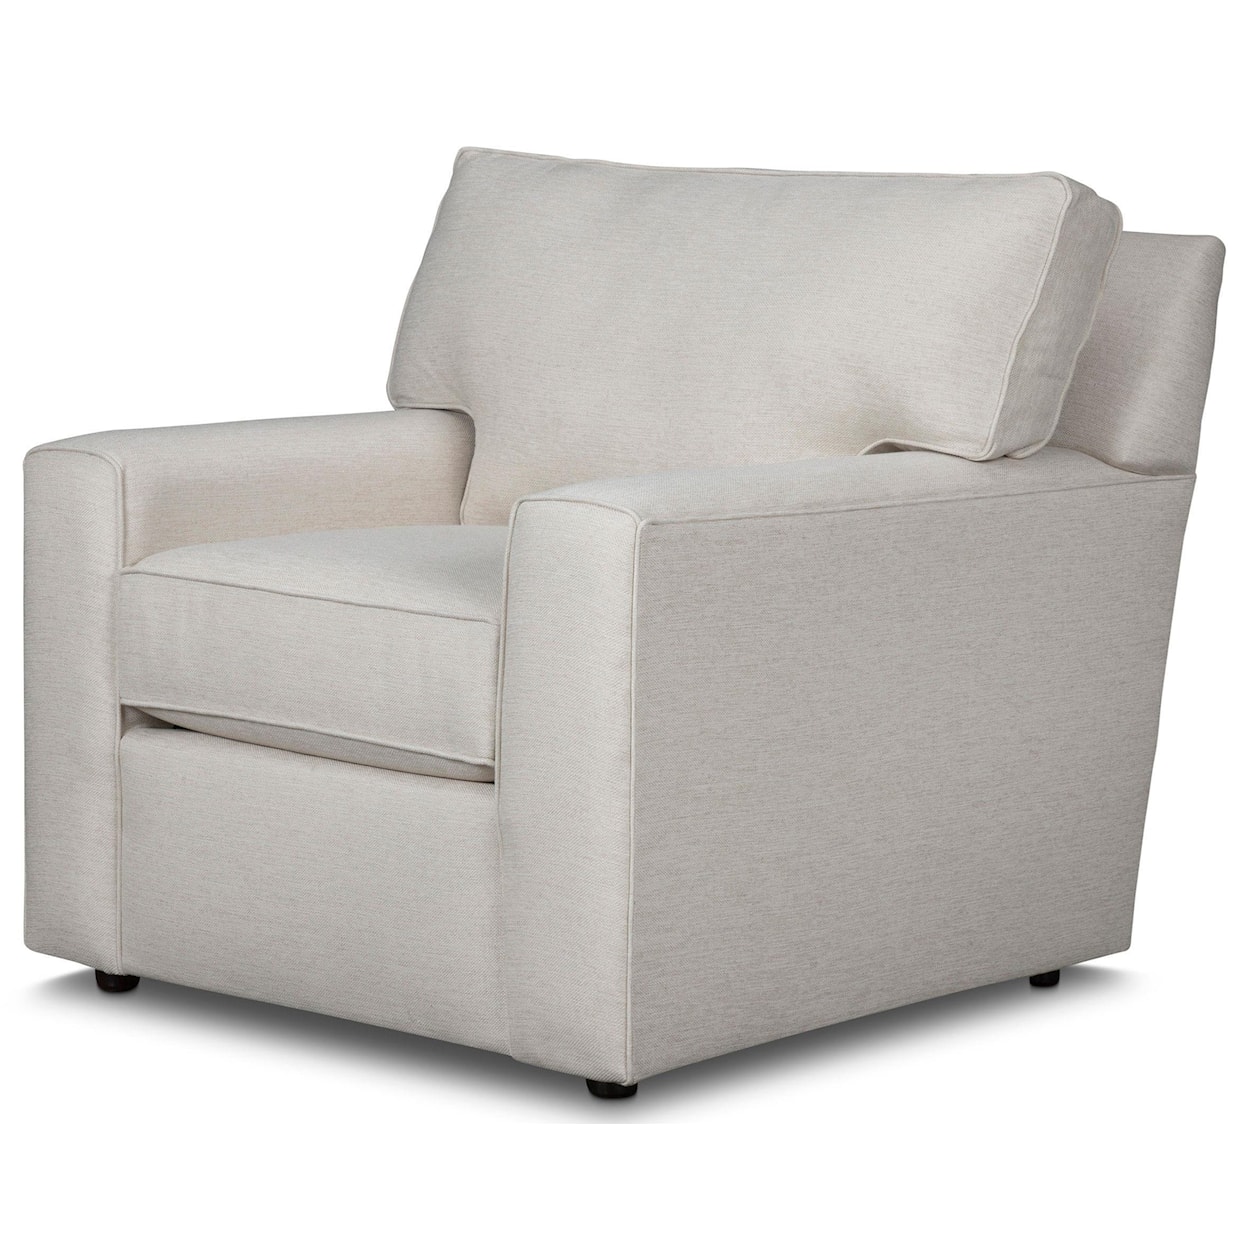 Stone & Leigh Furniture Leigh Accent Chair